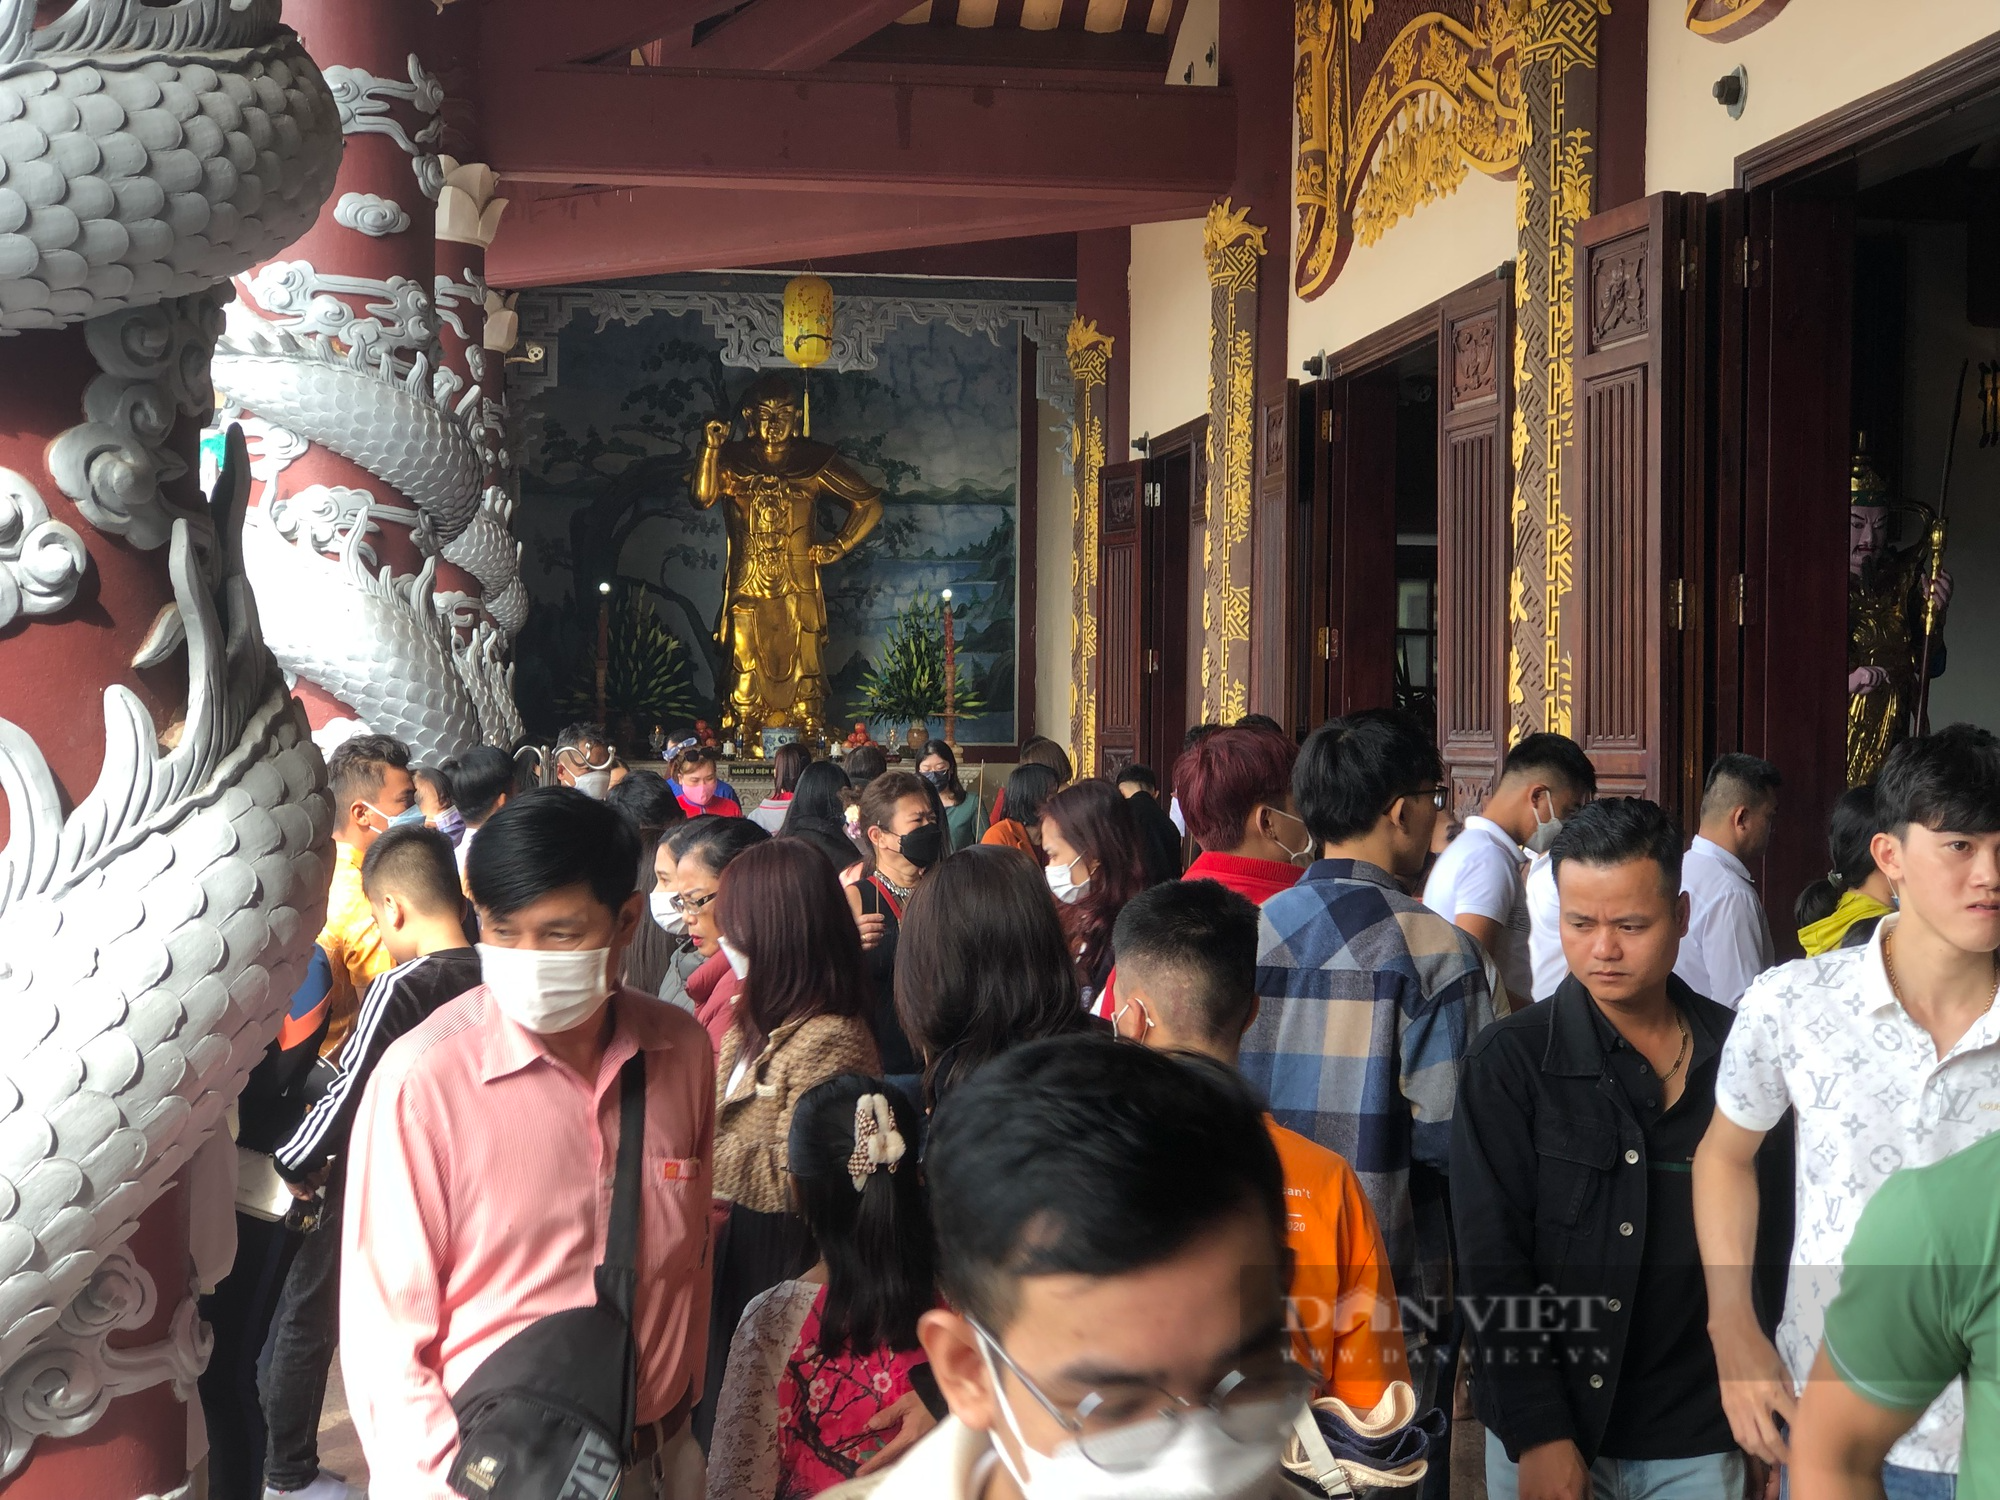 Mùng 1 Tết, hàng nghìn người đổ về chùa Linh Ứng Đà Nẵng cầu an - Ảnh 1.